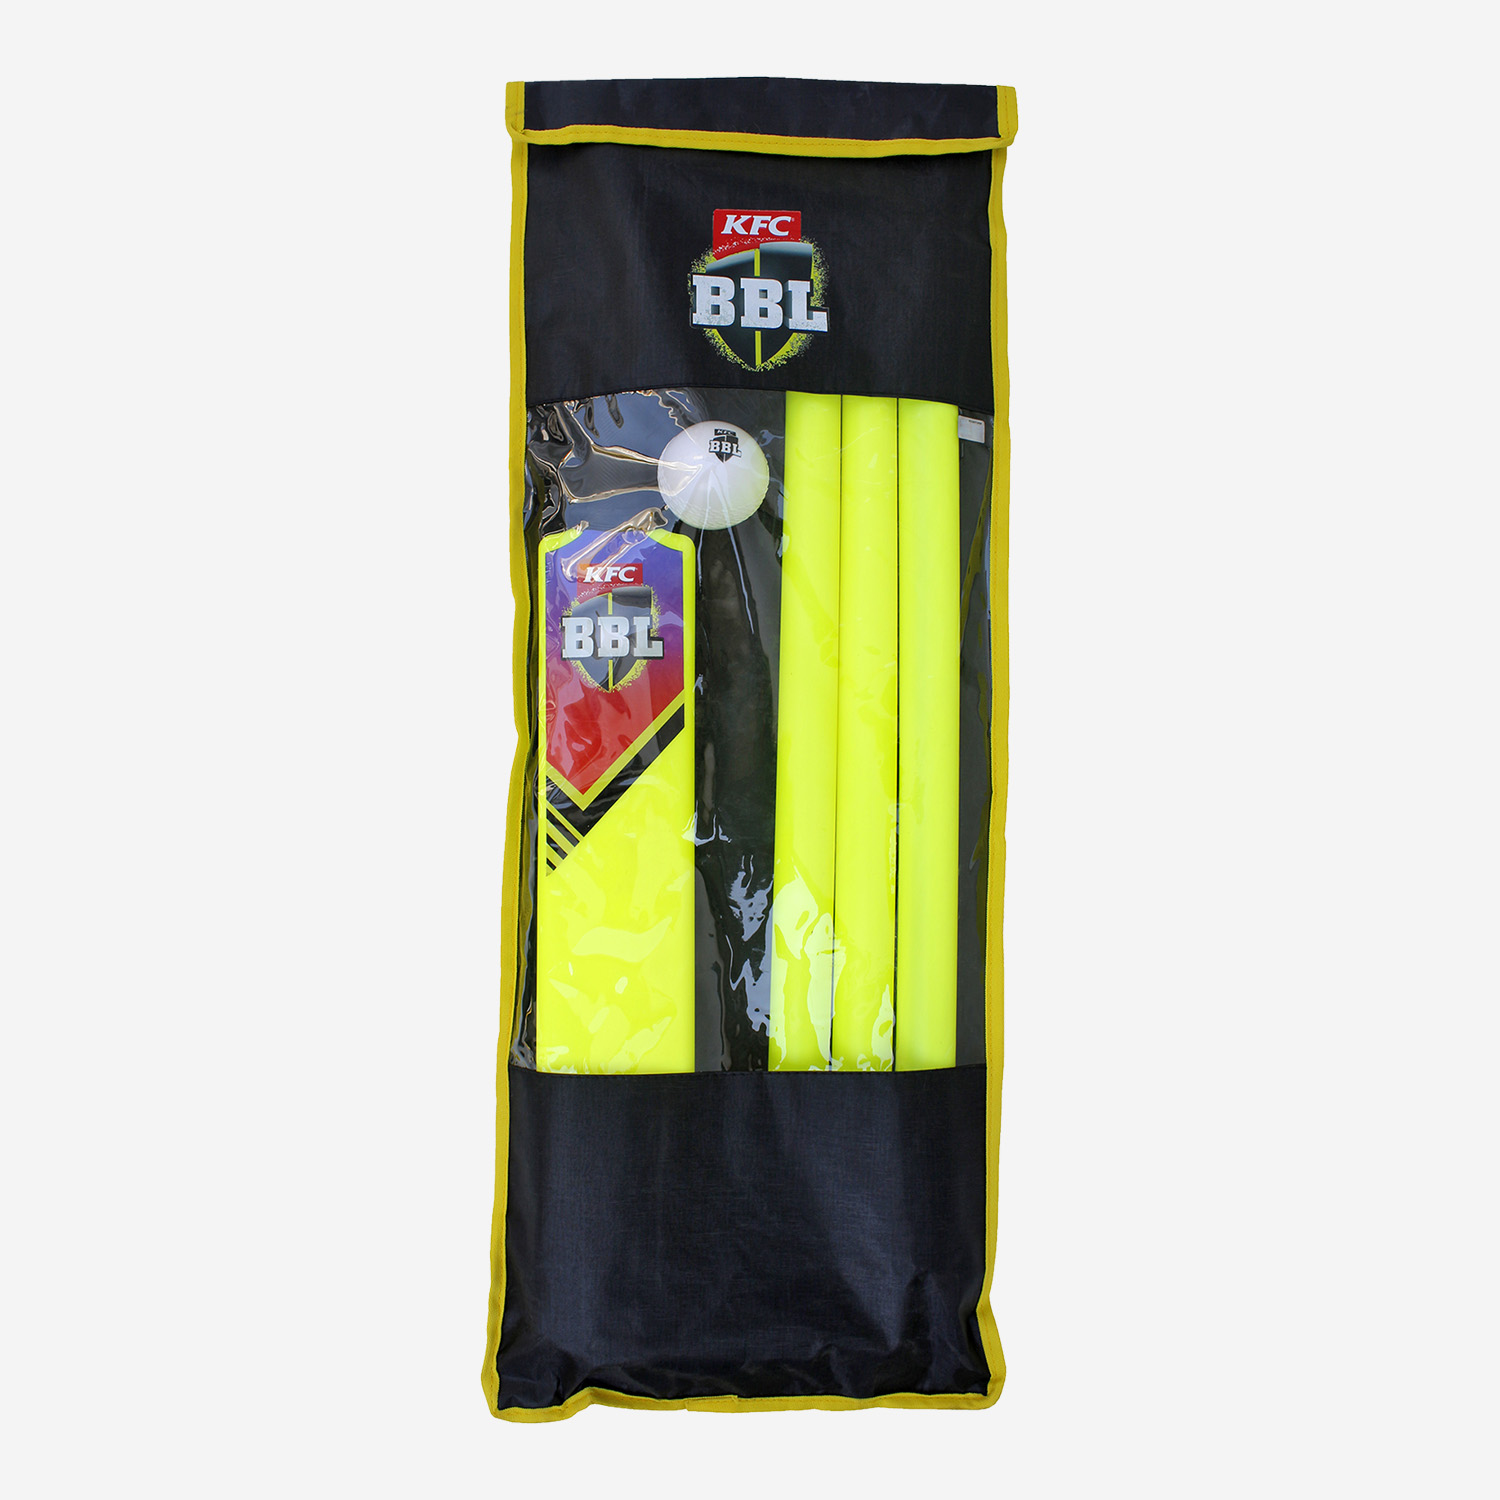 BBL plastic Cricket Set